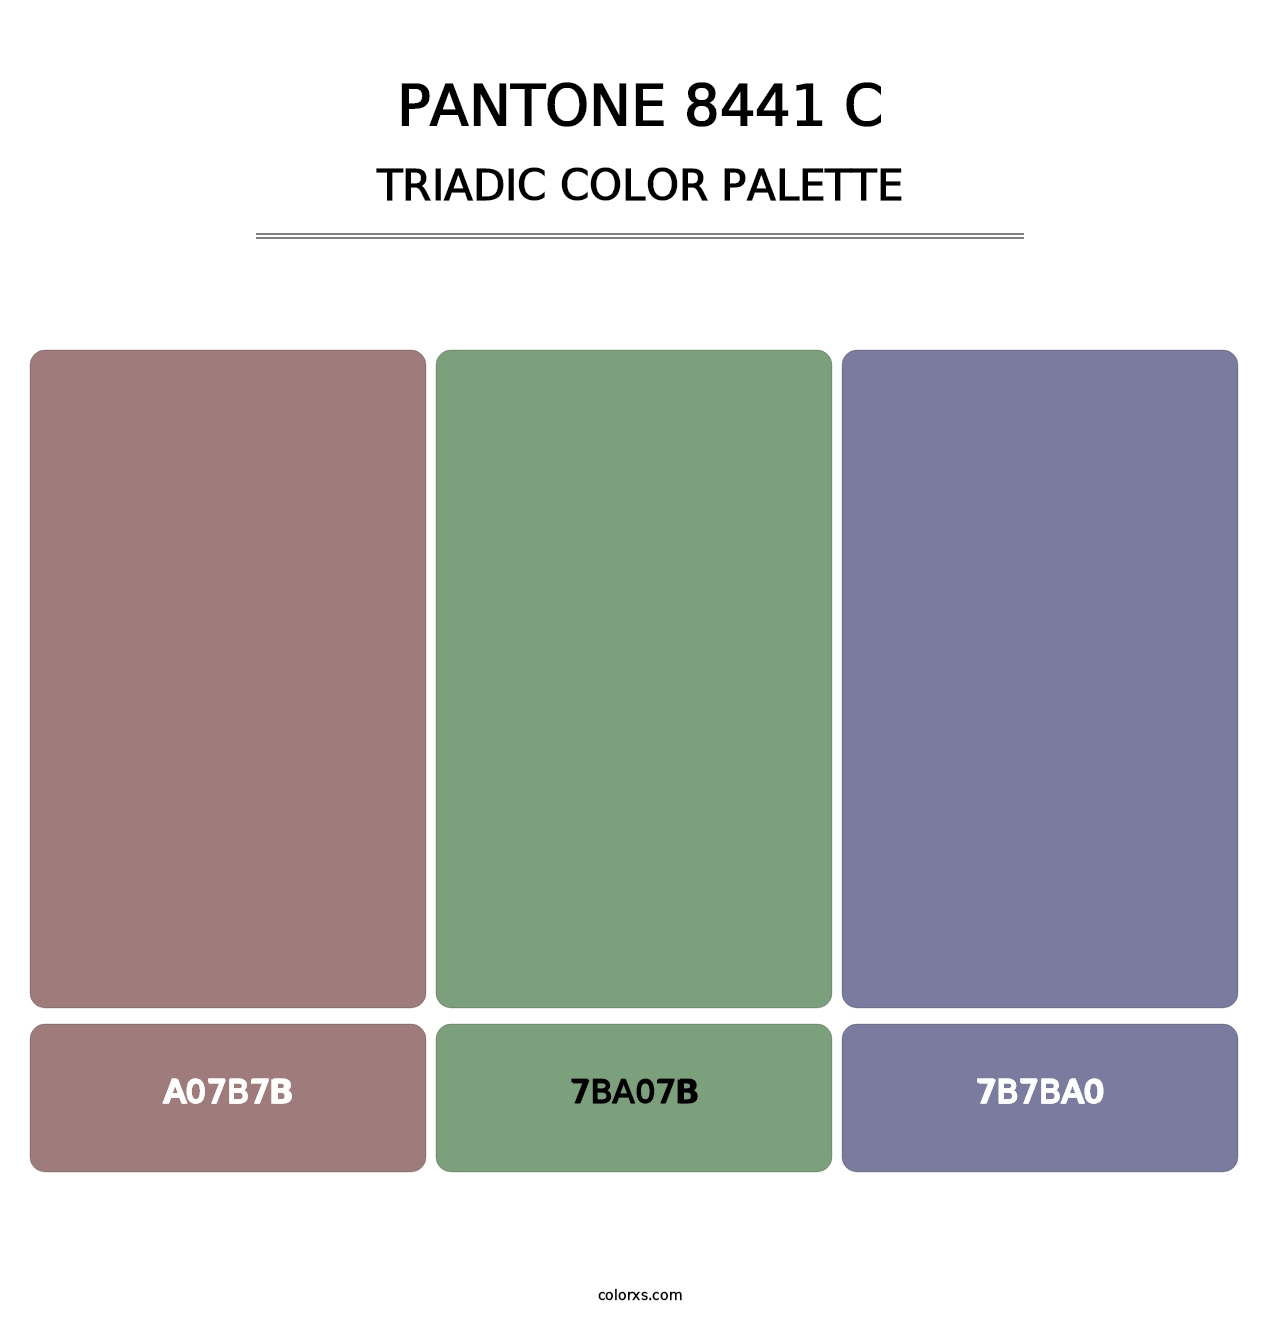 PANTONE 8441 C - Triadic Color Palette